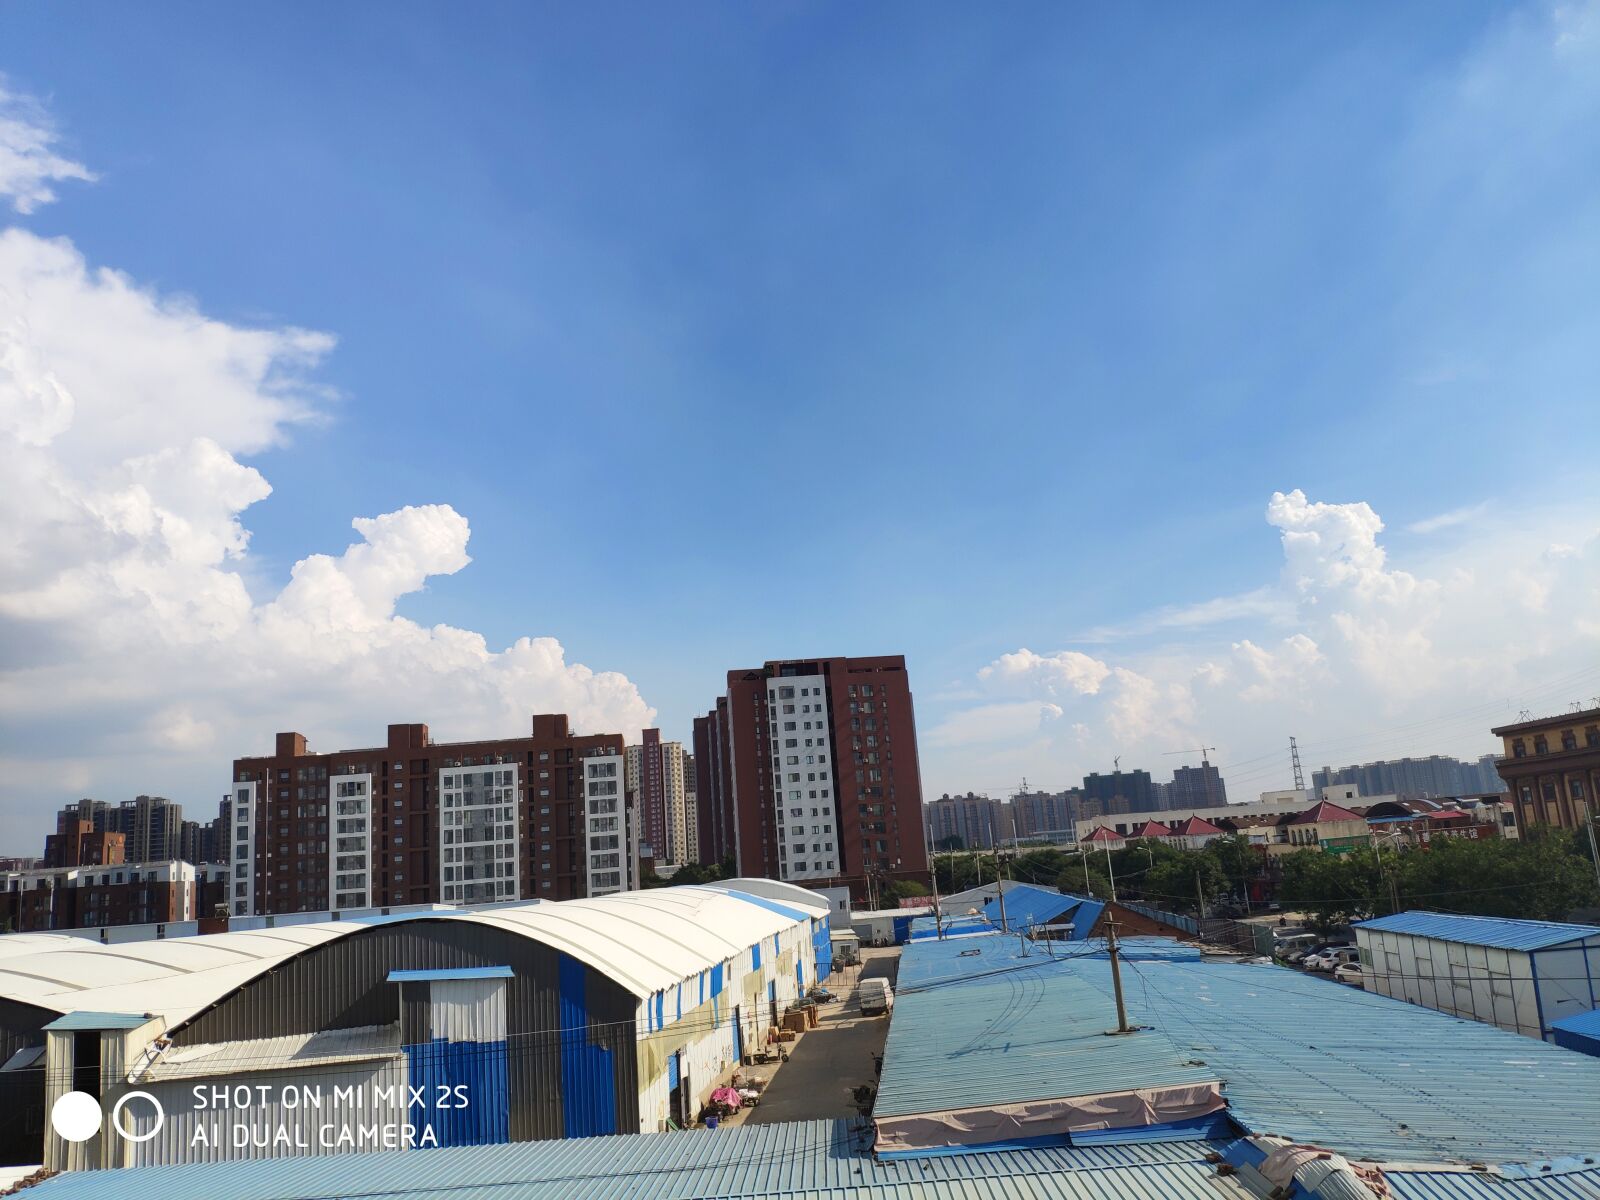 Xiaomi MIX 2S sample photo. Sky, cloud, building photography